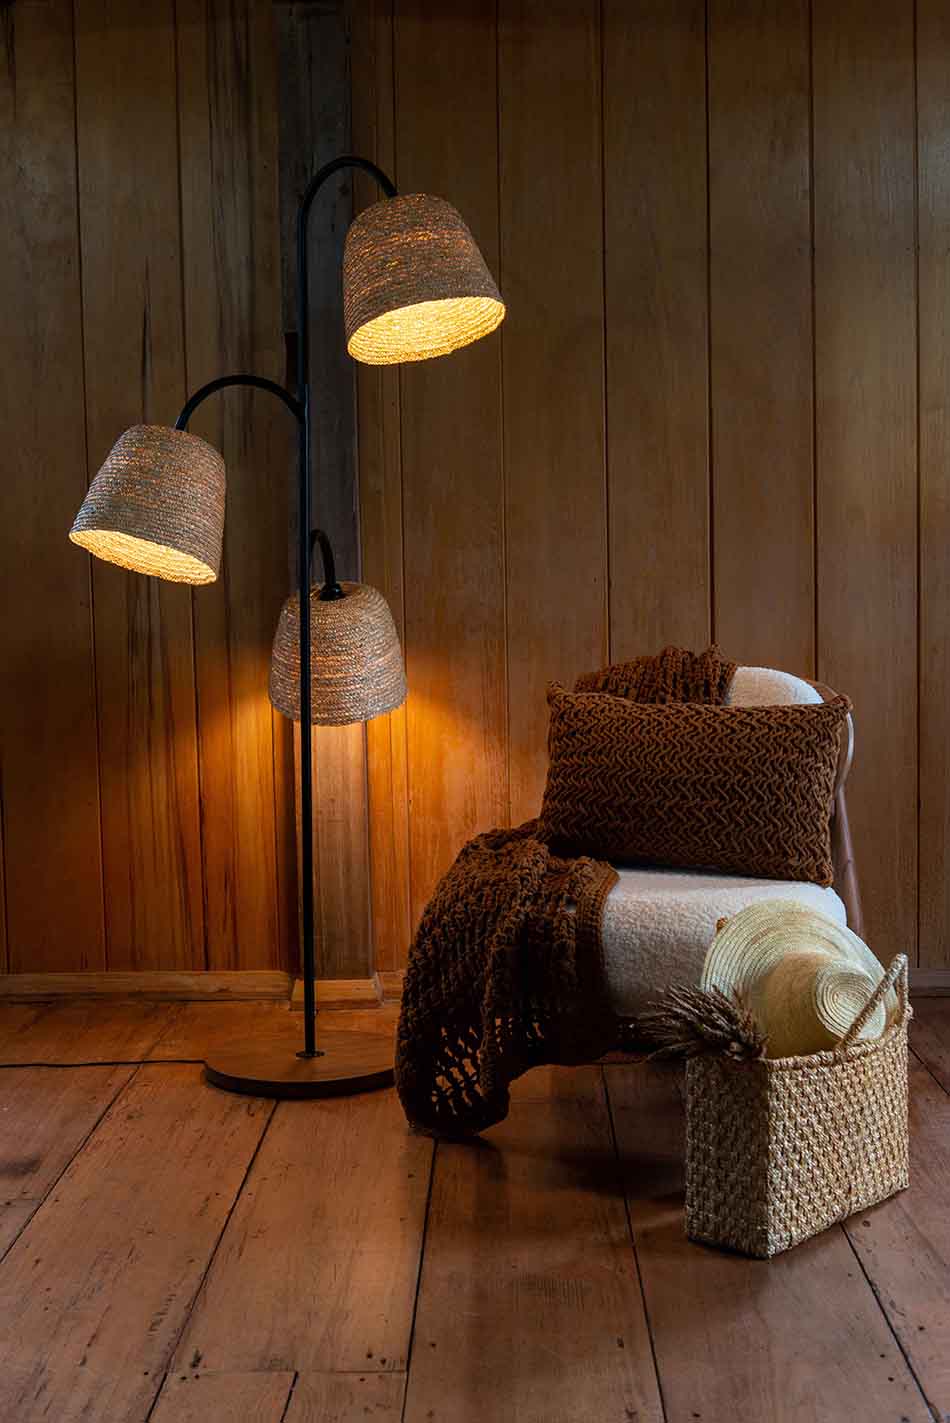 Foto da decoração de uma casa de madeira. Na imagem é possível ver uma luminária de ferro preta, uma poltrona branca com uma manta de crochê marrom por cima e, ao lado, uma bolsa estilo cesto de palha.